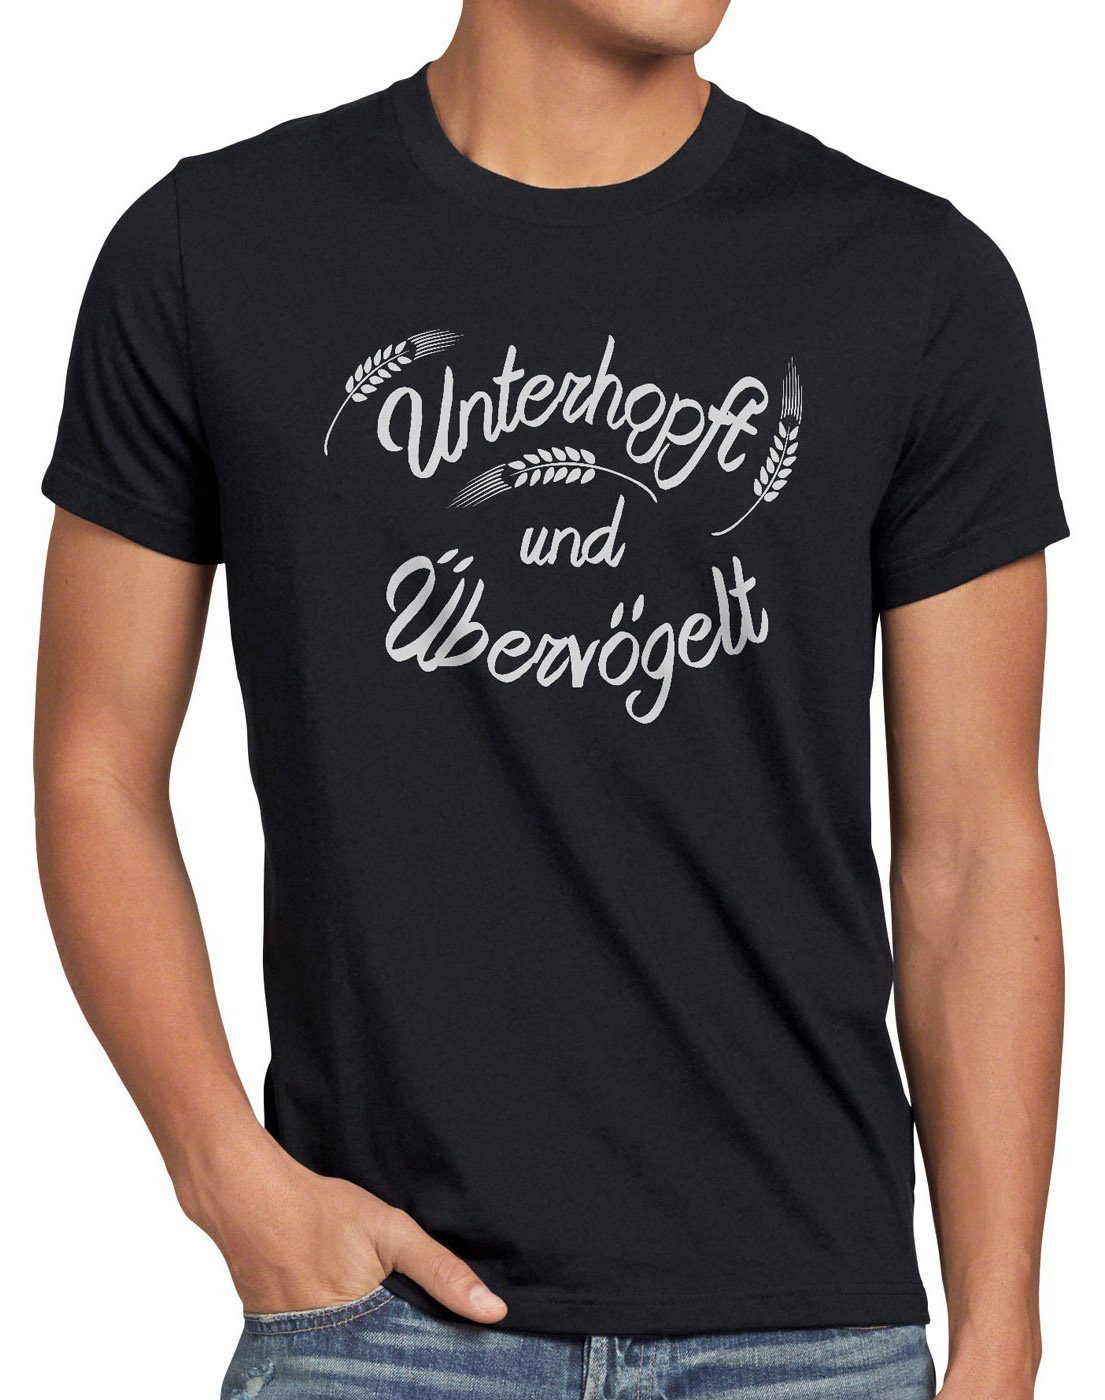 style3 Kult Print-Shirt Malz schwarz Fun Shirt Bier Spruch Unterhopft Übervögelt Herren T-Shirt Funshirt